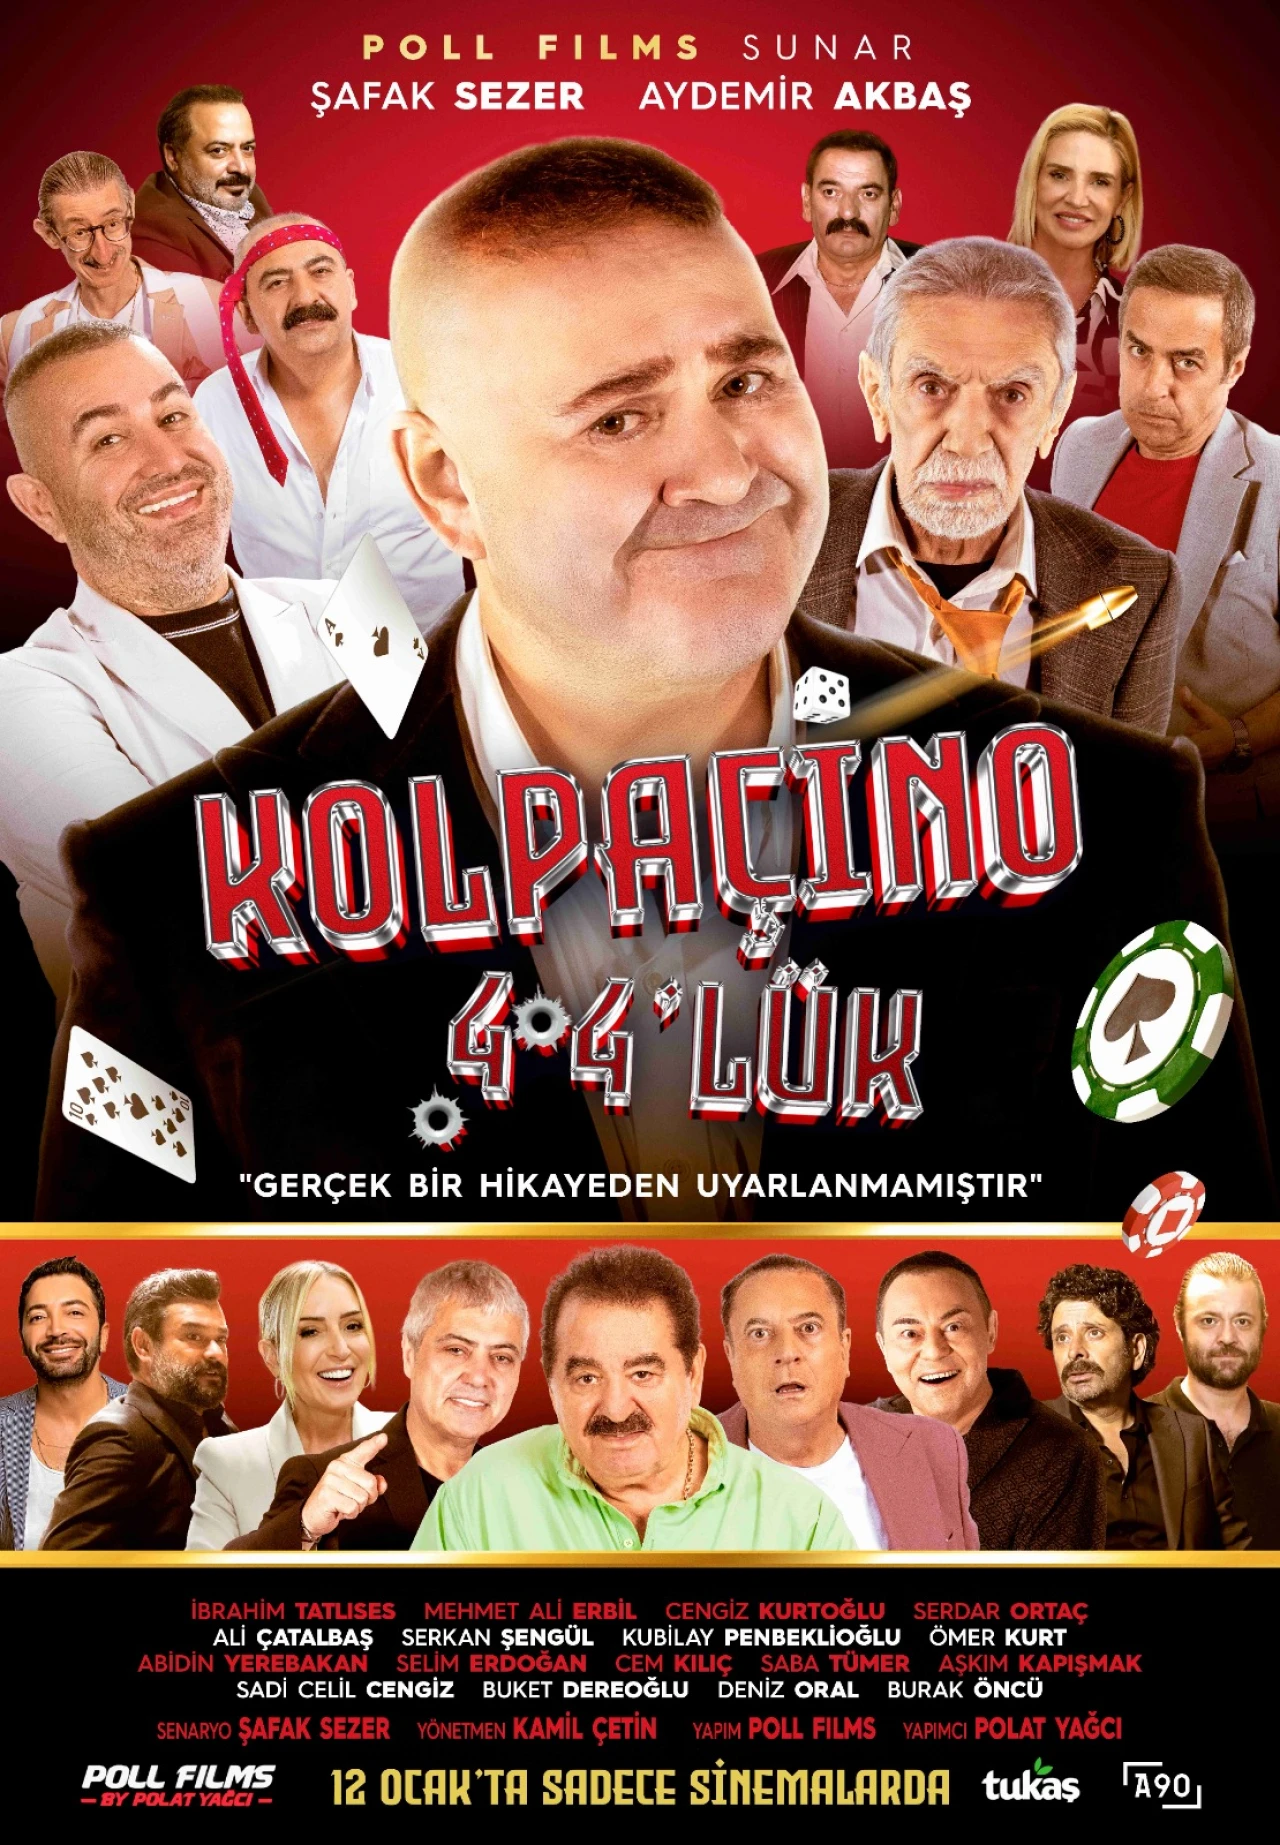 Kolpaçino 4 filminin afişi yayınlandı